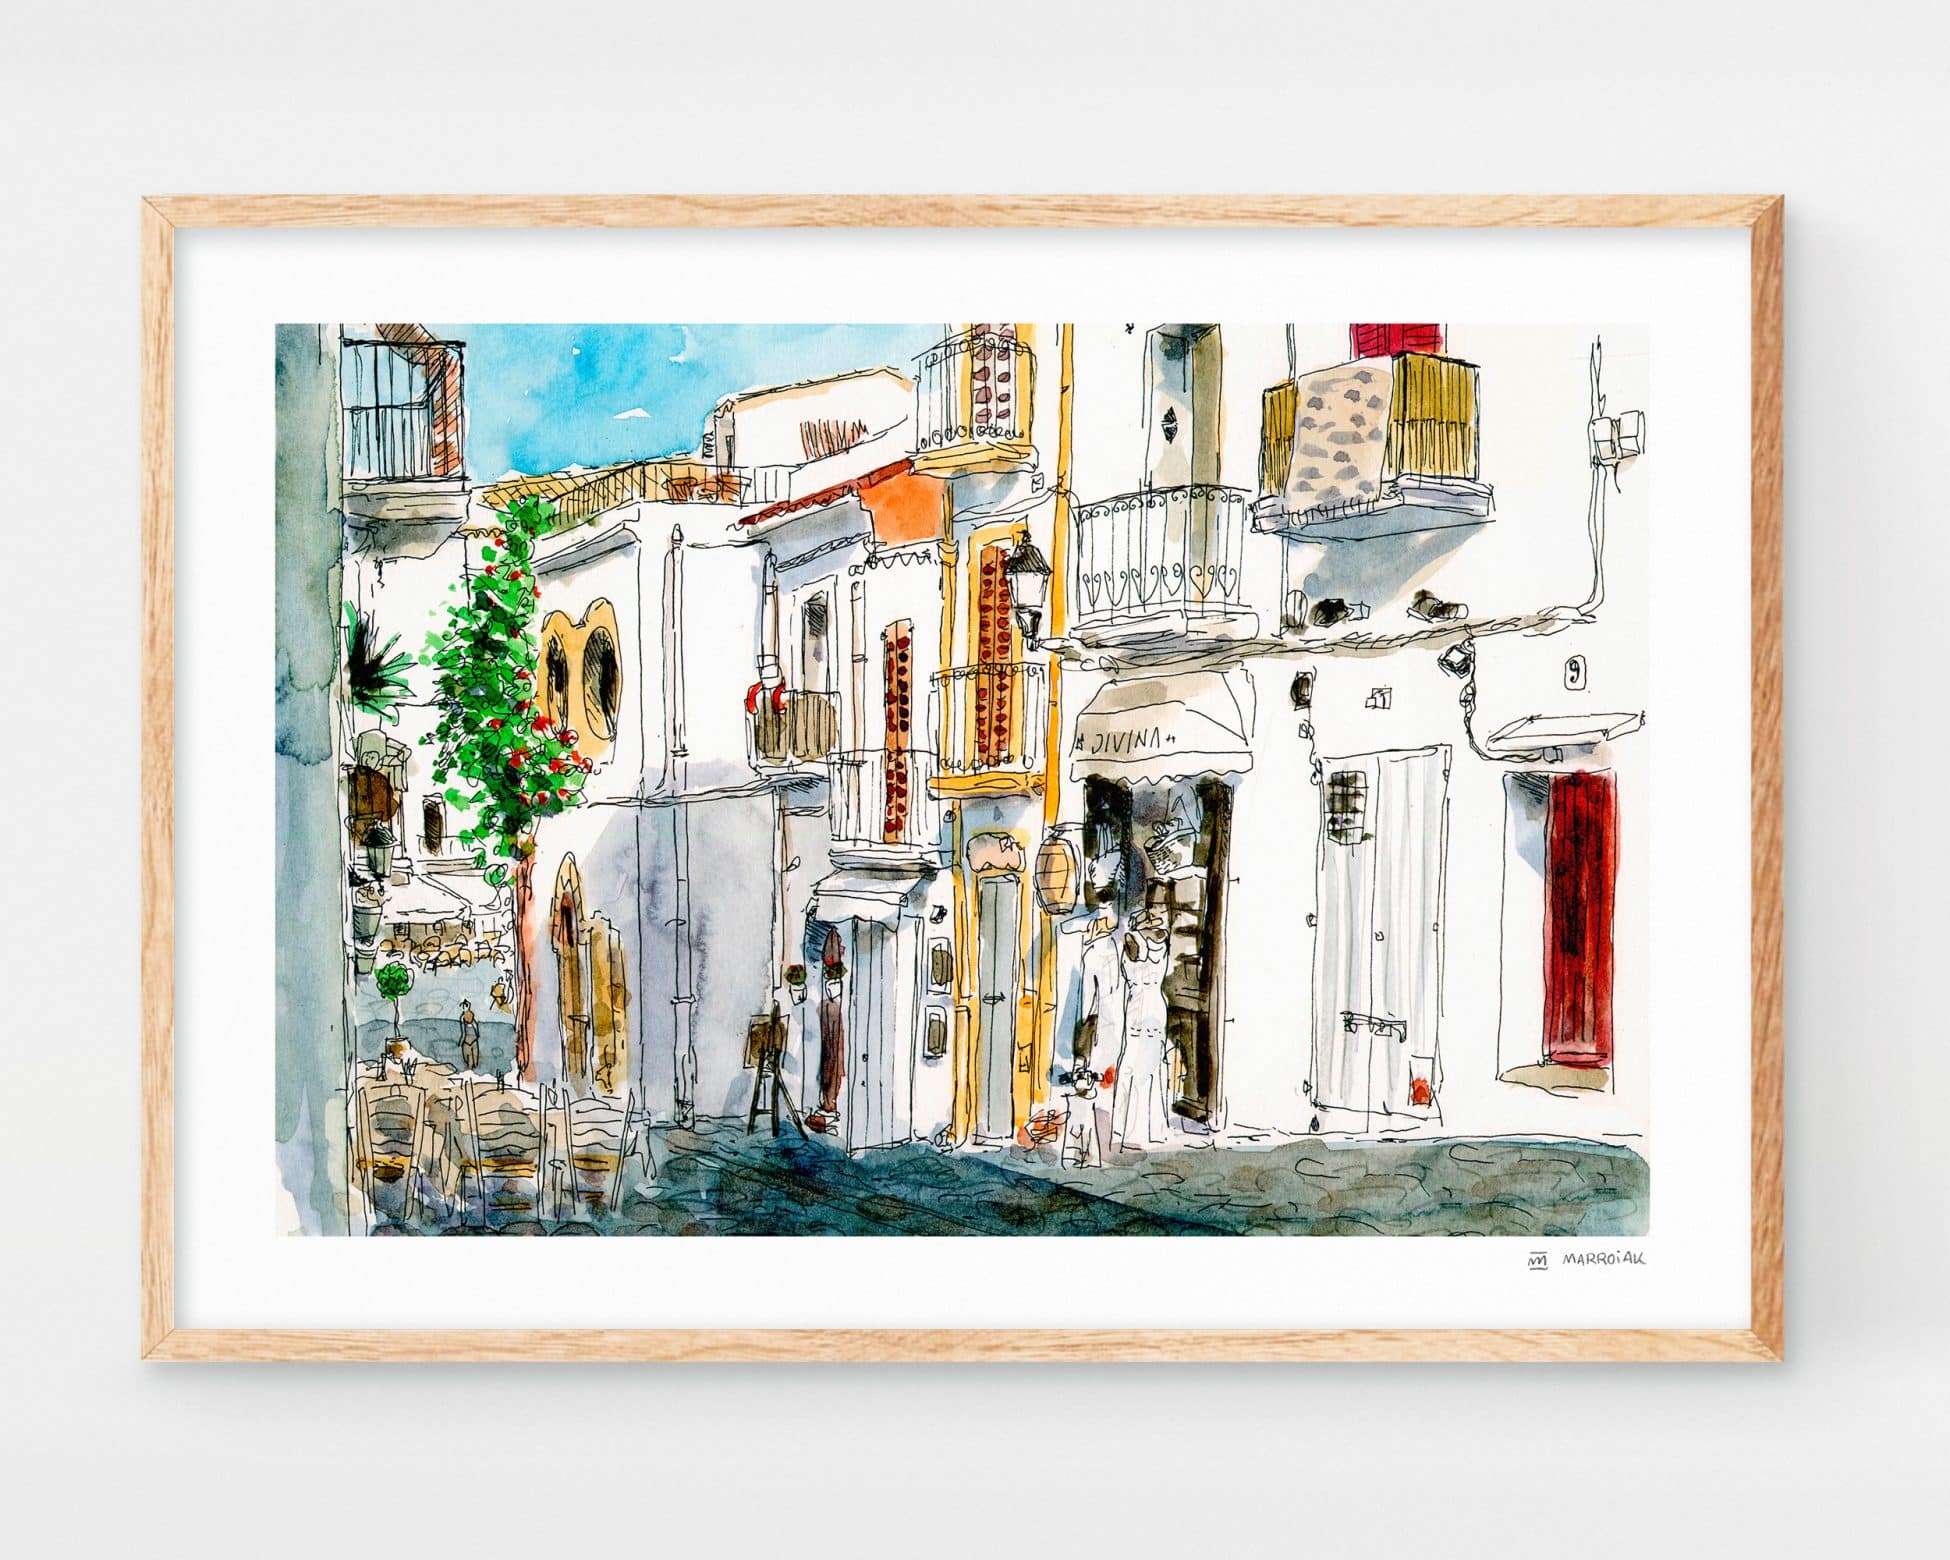 Santa Creu Street at Ibiza Dalt Vila. Watercolor illustration art print